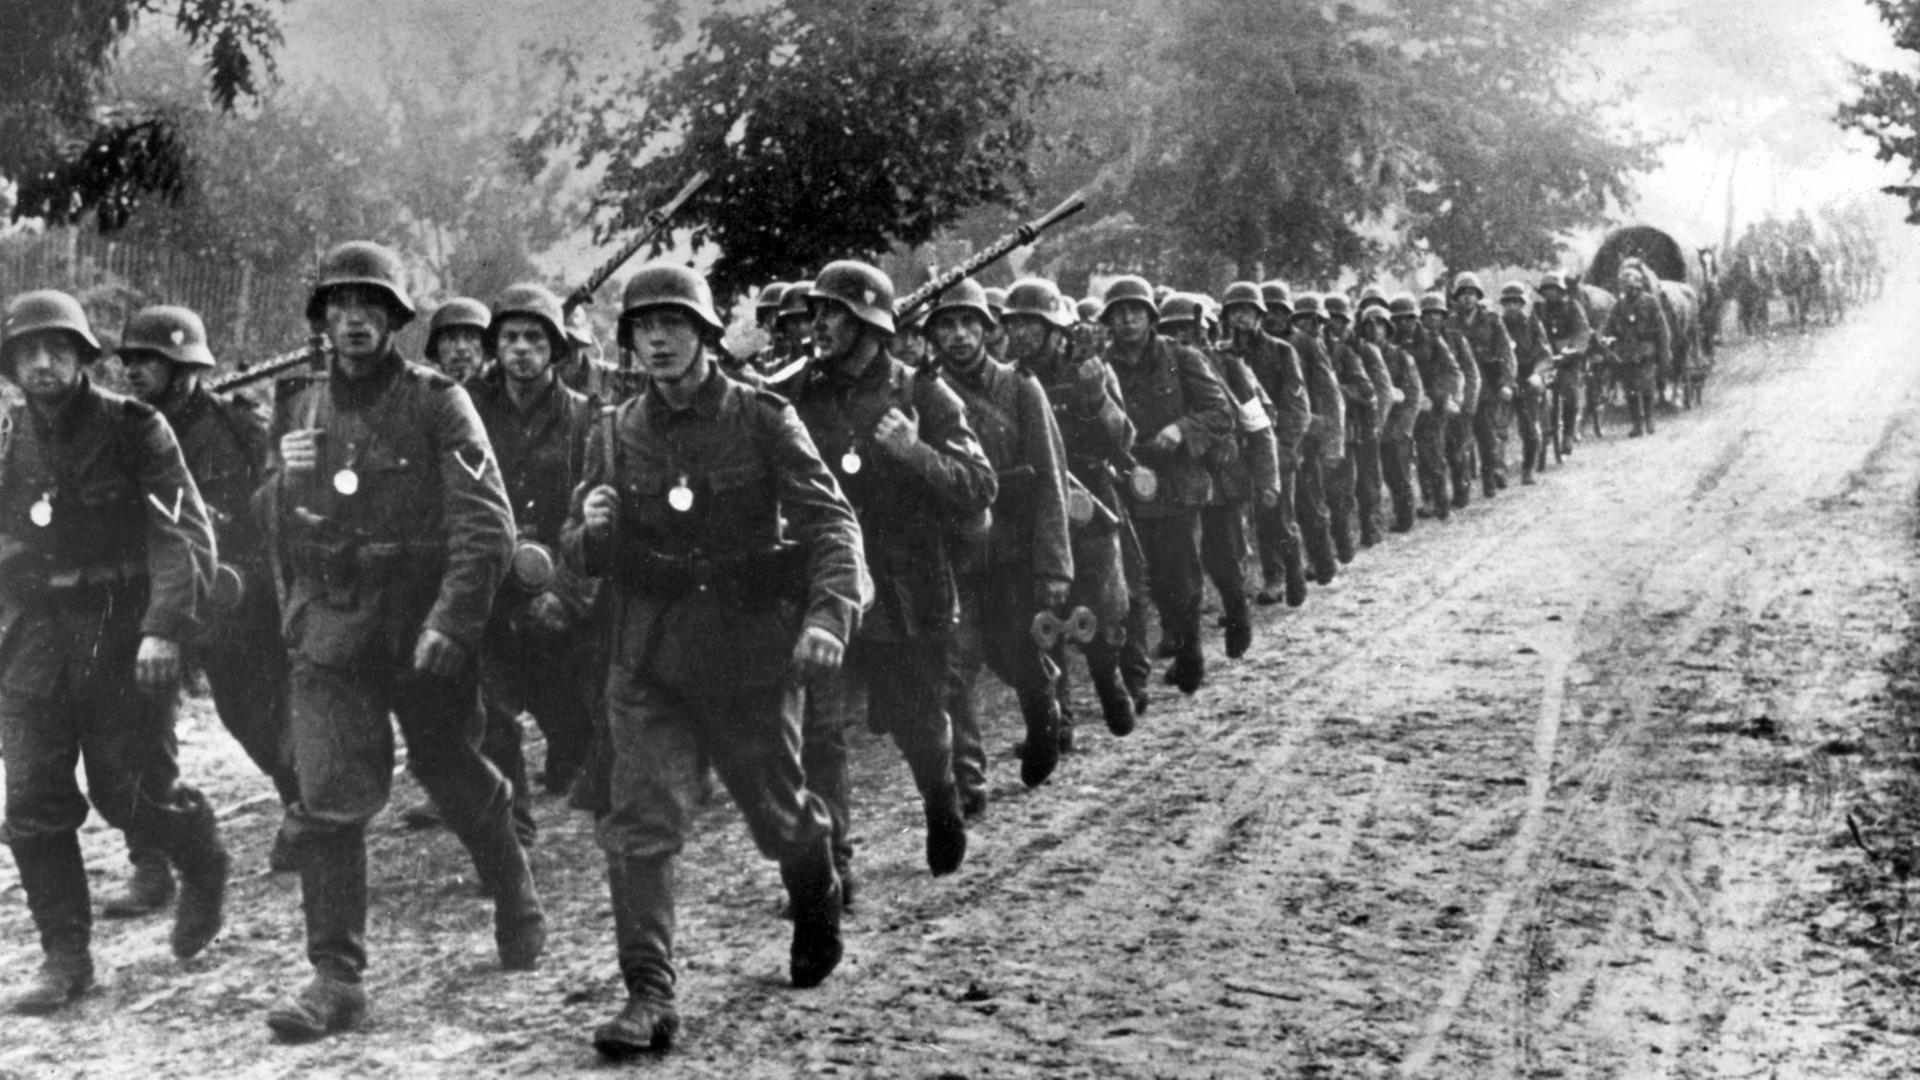 Schwarz-weiß-Bild von Soldaten der deutschen Wehrmacht, die am 1. September 1939 in Polen einmarschieren.